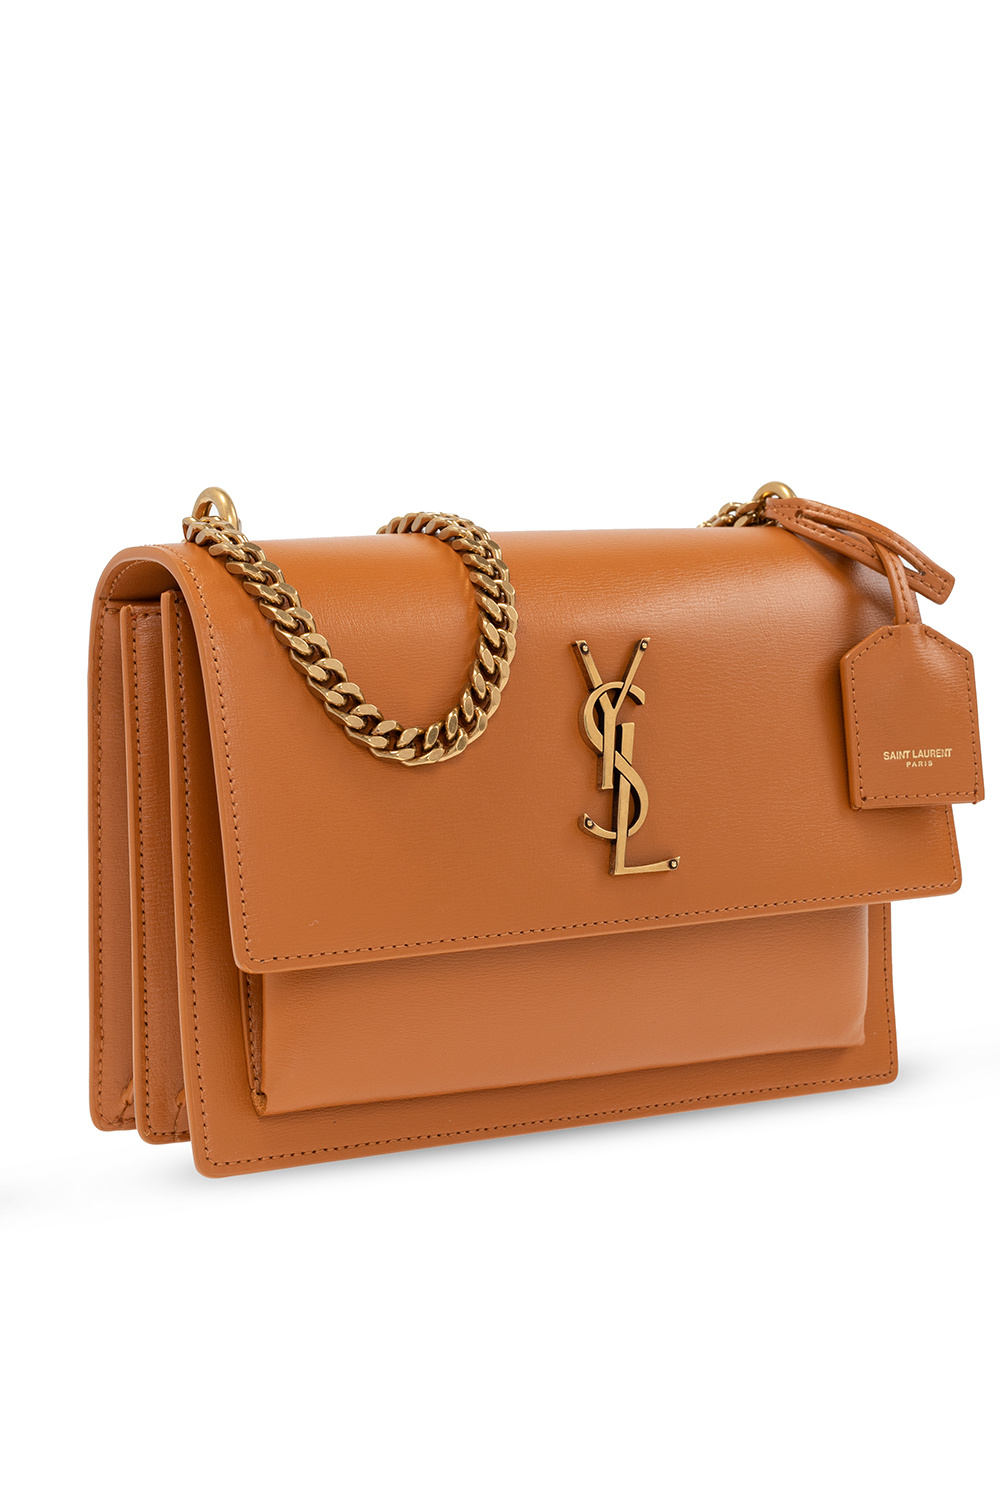 Yves Saint Laurent Monogram Sunset Leather Shoulder Bag